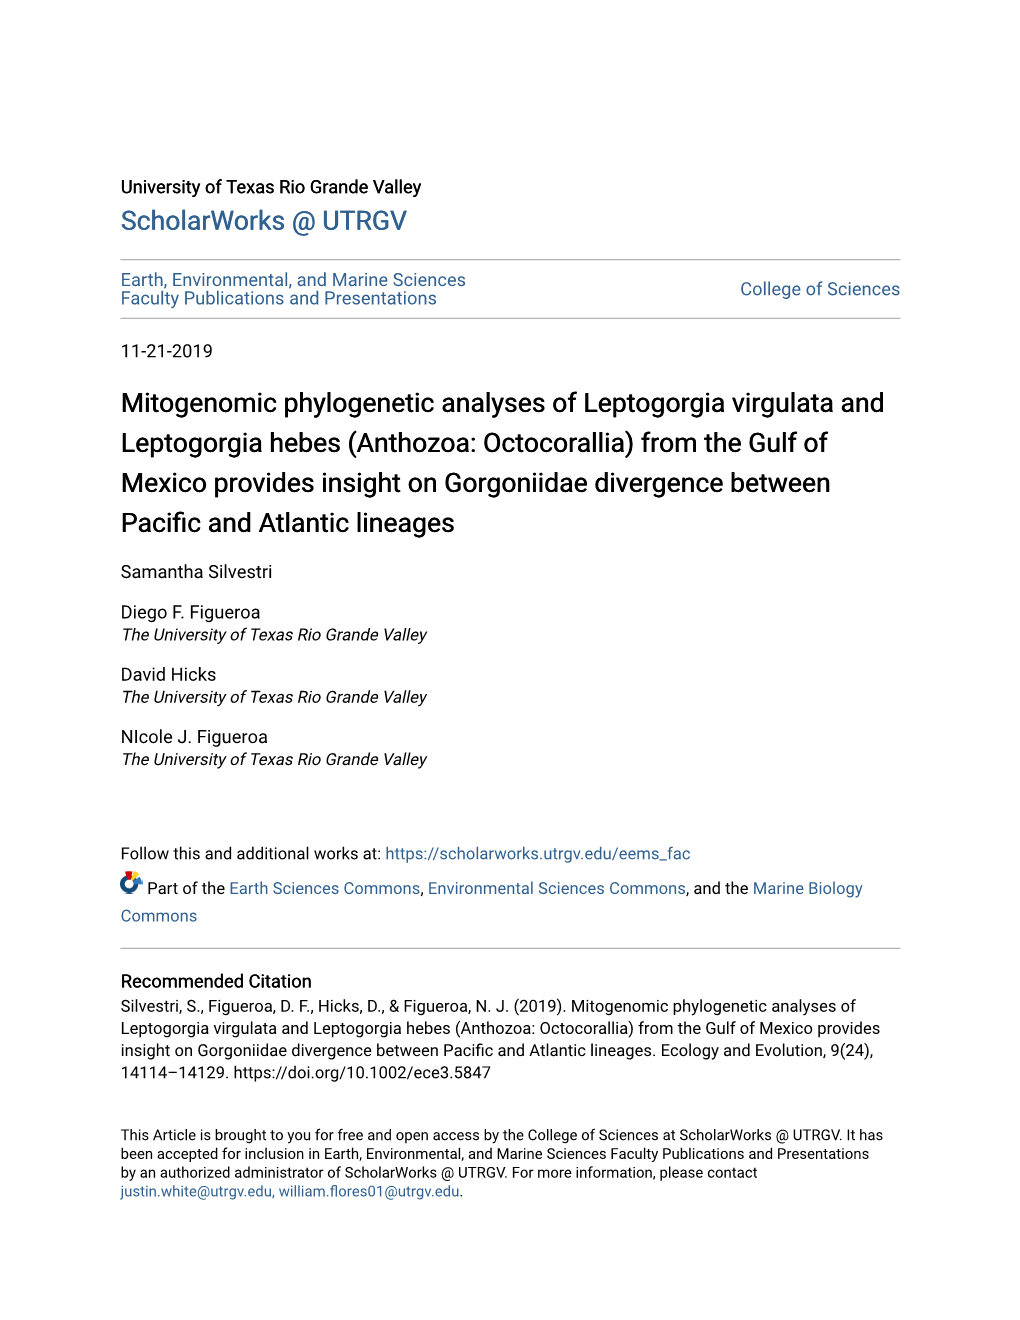 Mitogenomic Phylogenetic Analyses of Leptogorgia Virgulata And